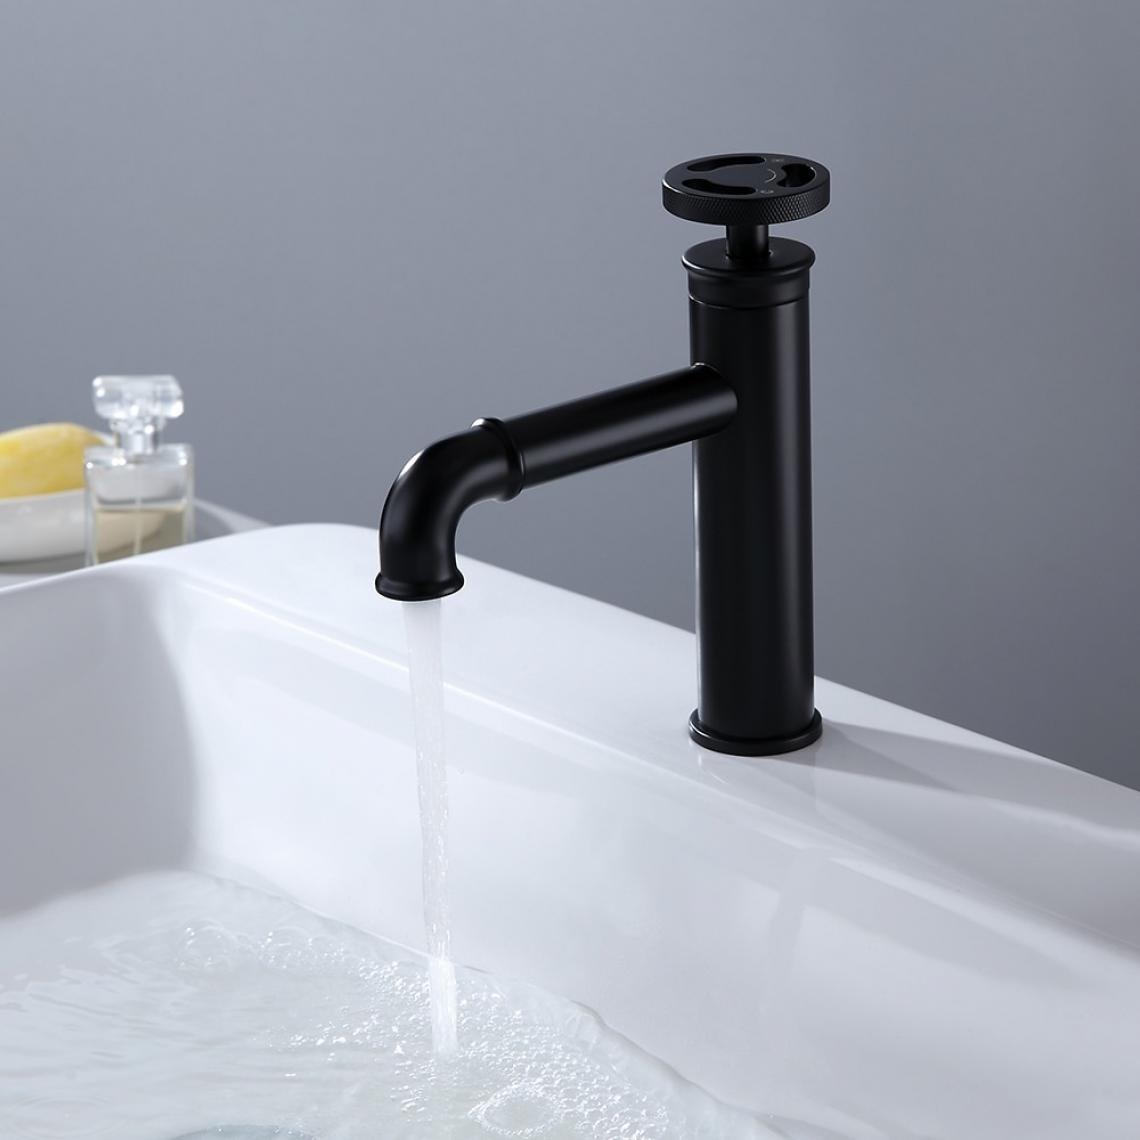 Kroos - Robinet mitigeur lavabo salle de bain style rétro - Noir - Robinet de lavabo